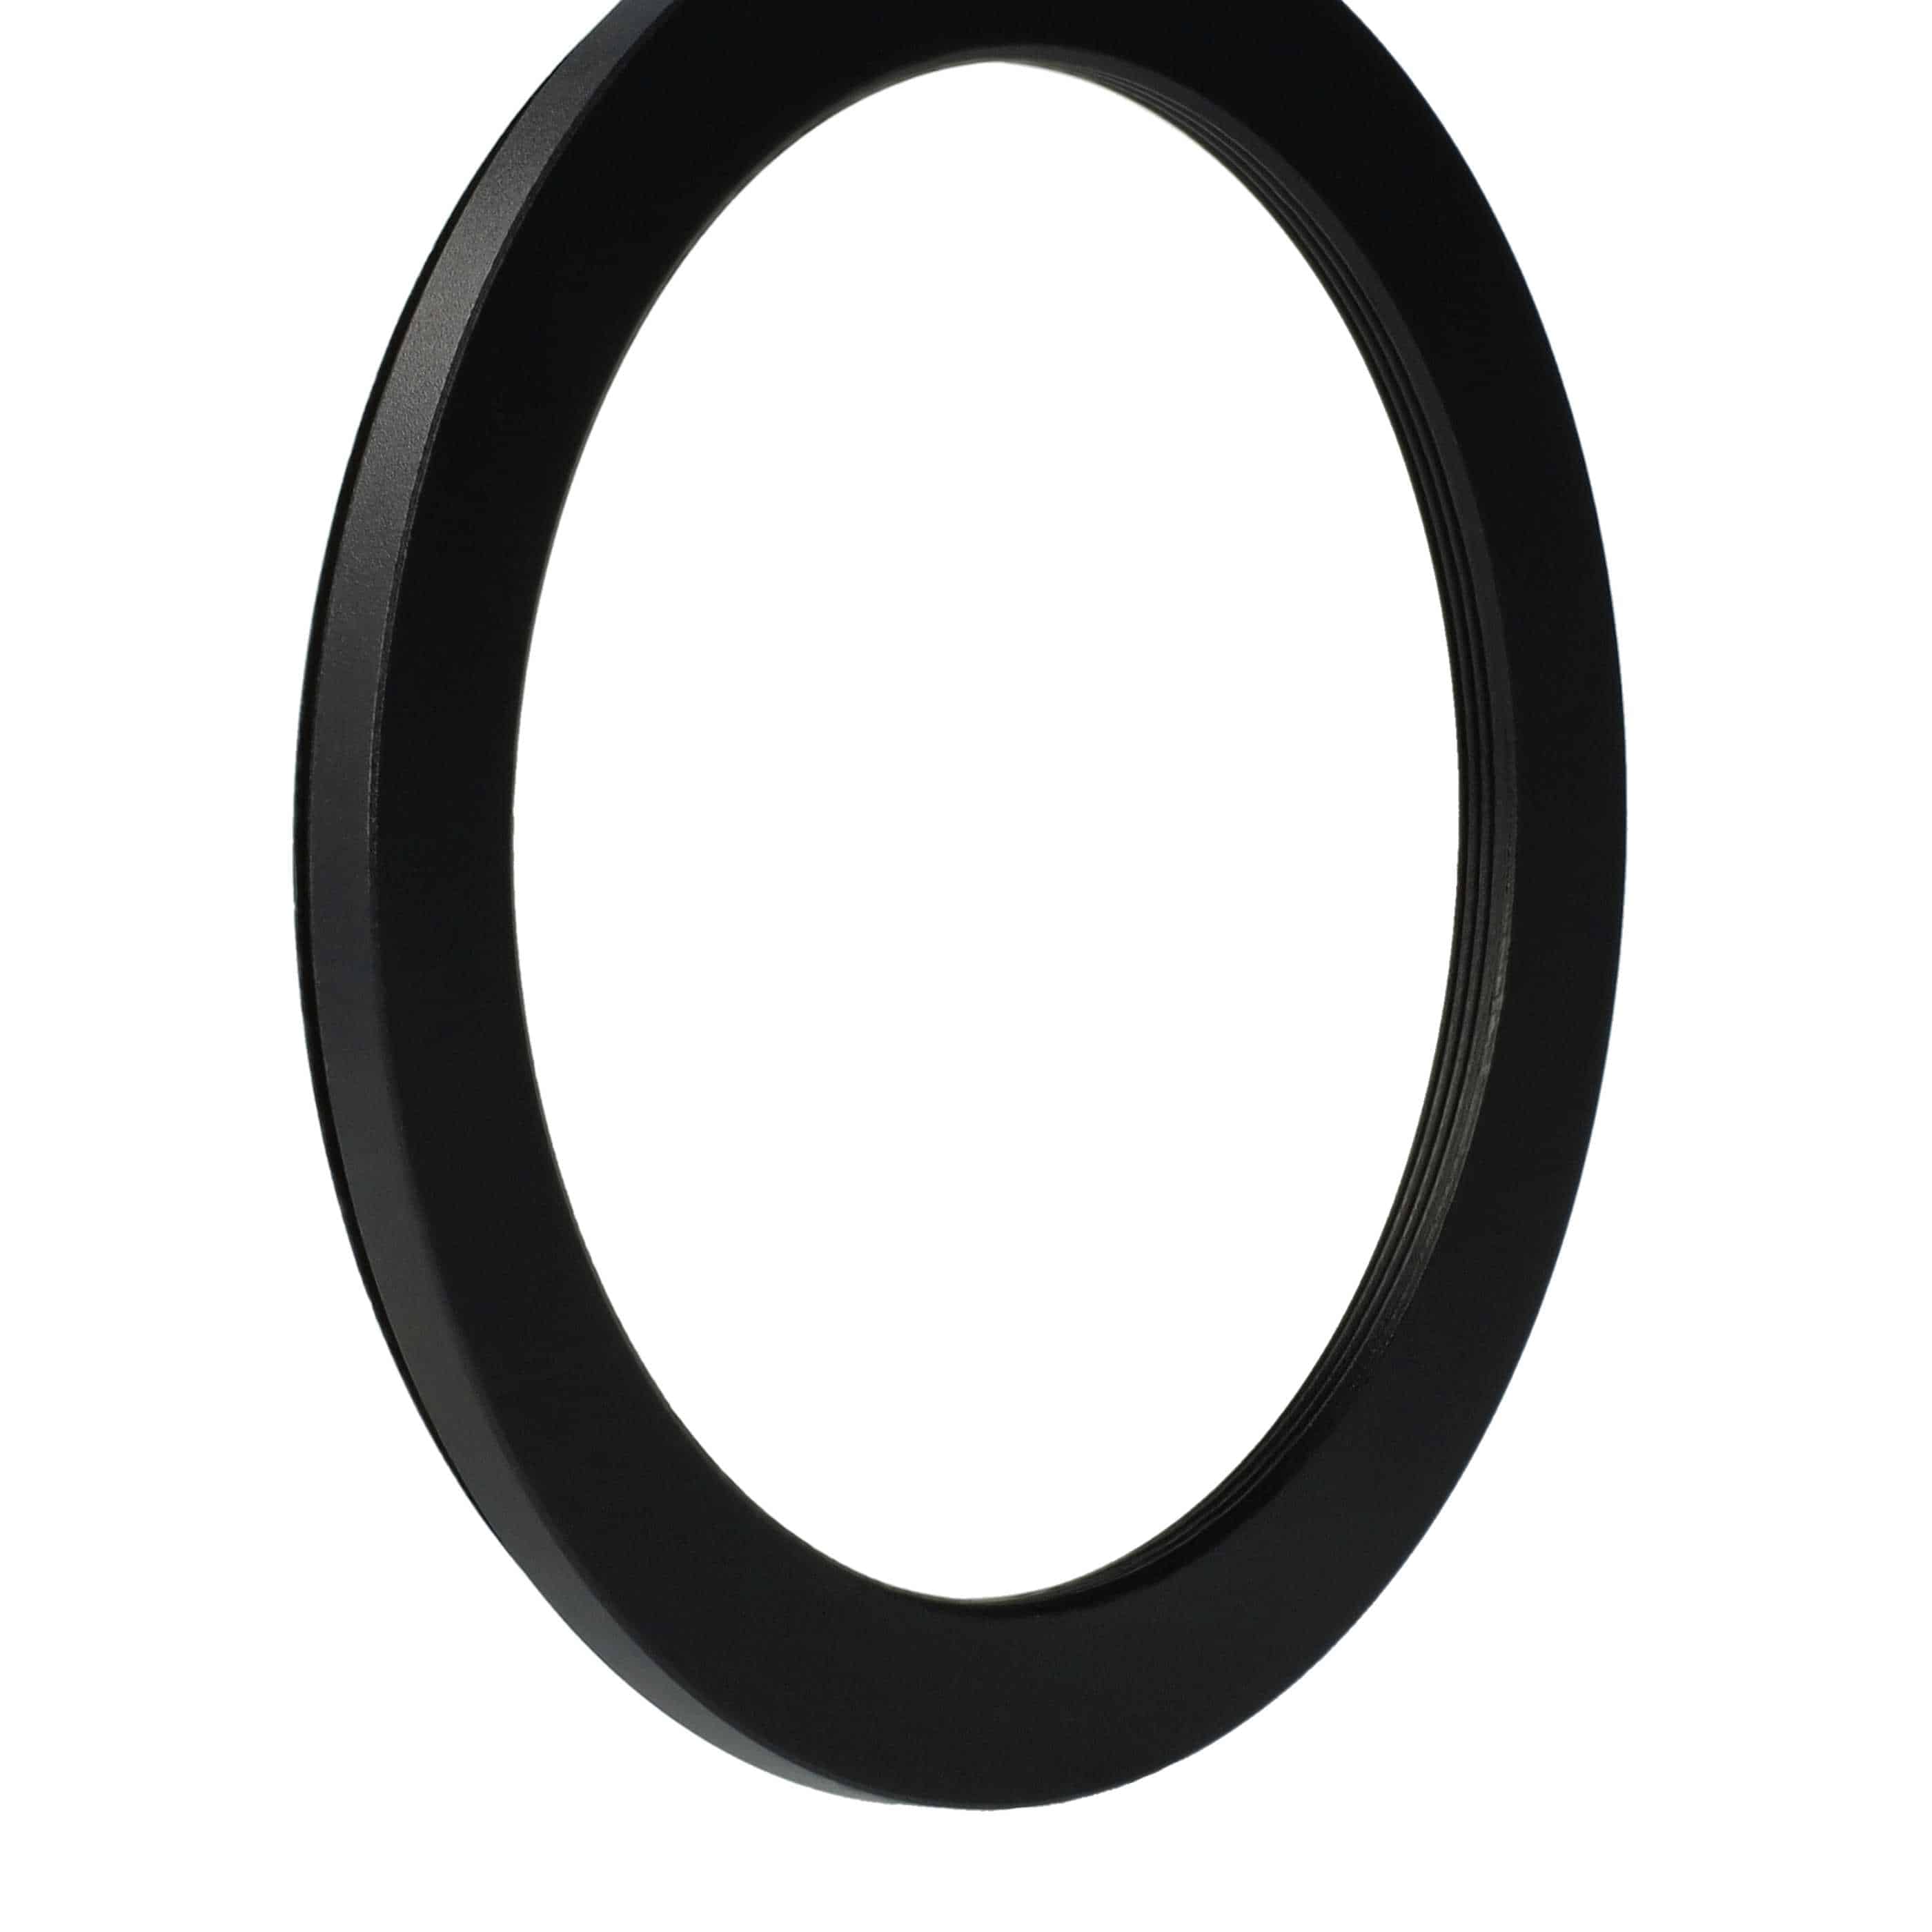 Redukcja filtrowa adapter Step-Down 82 mm - 67 mm pasująca do obiektywu - metal, czarny